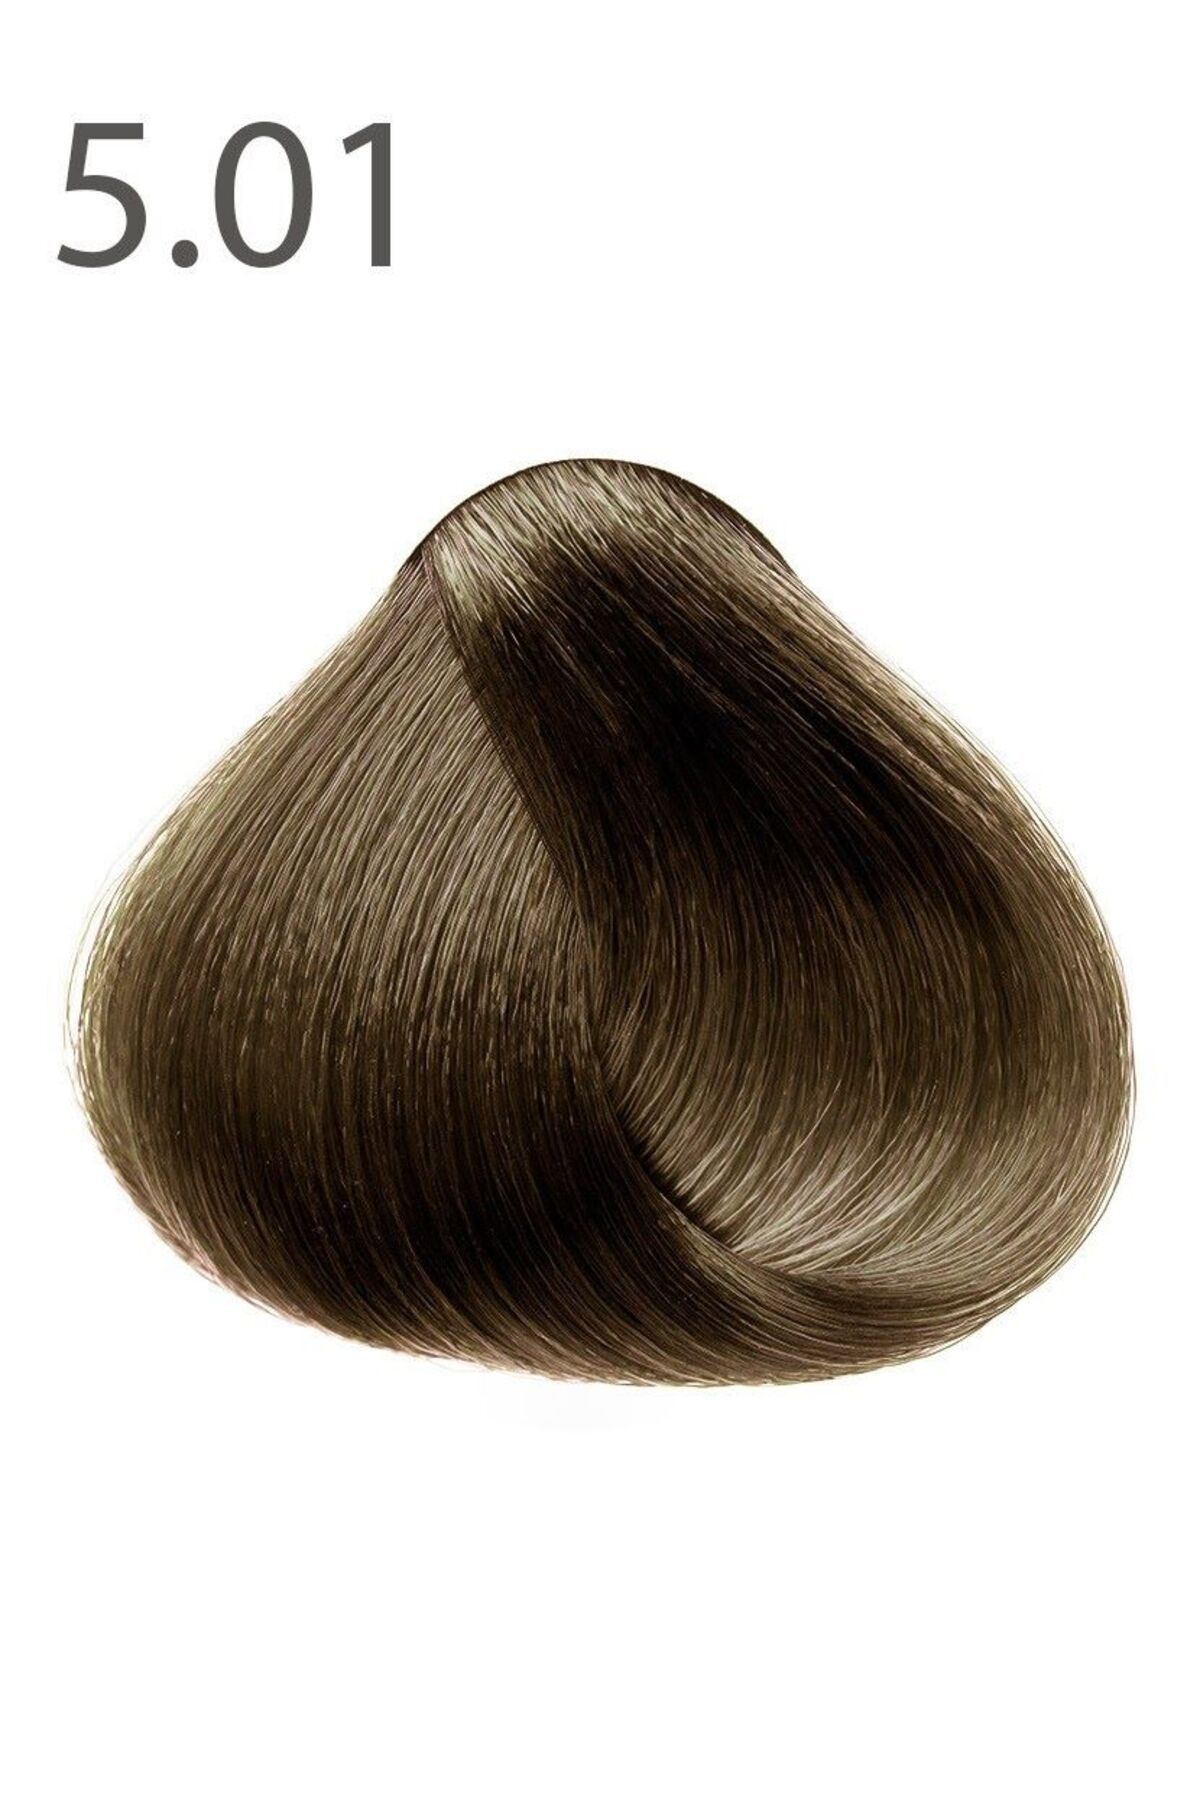 Faberlic SALONCARE Serisi Kalıcı Saç Boyası - Mokko 5.01*8268